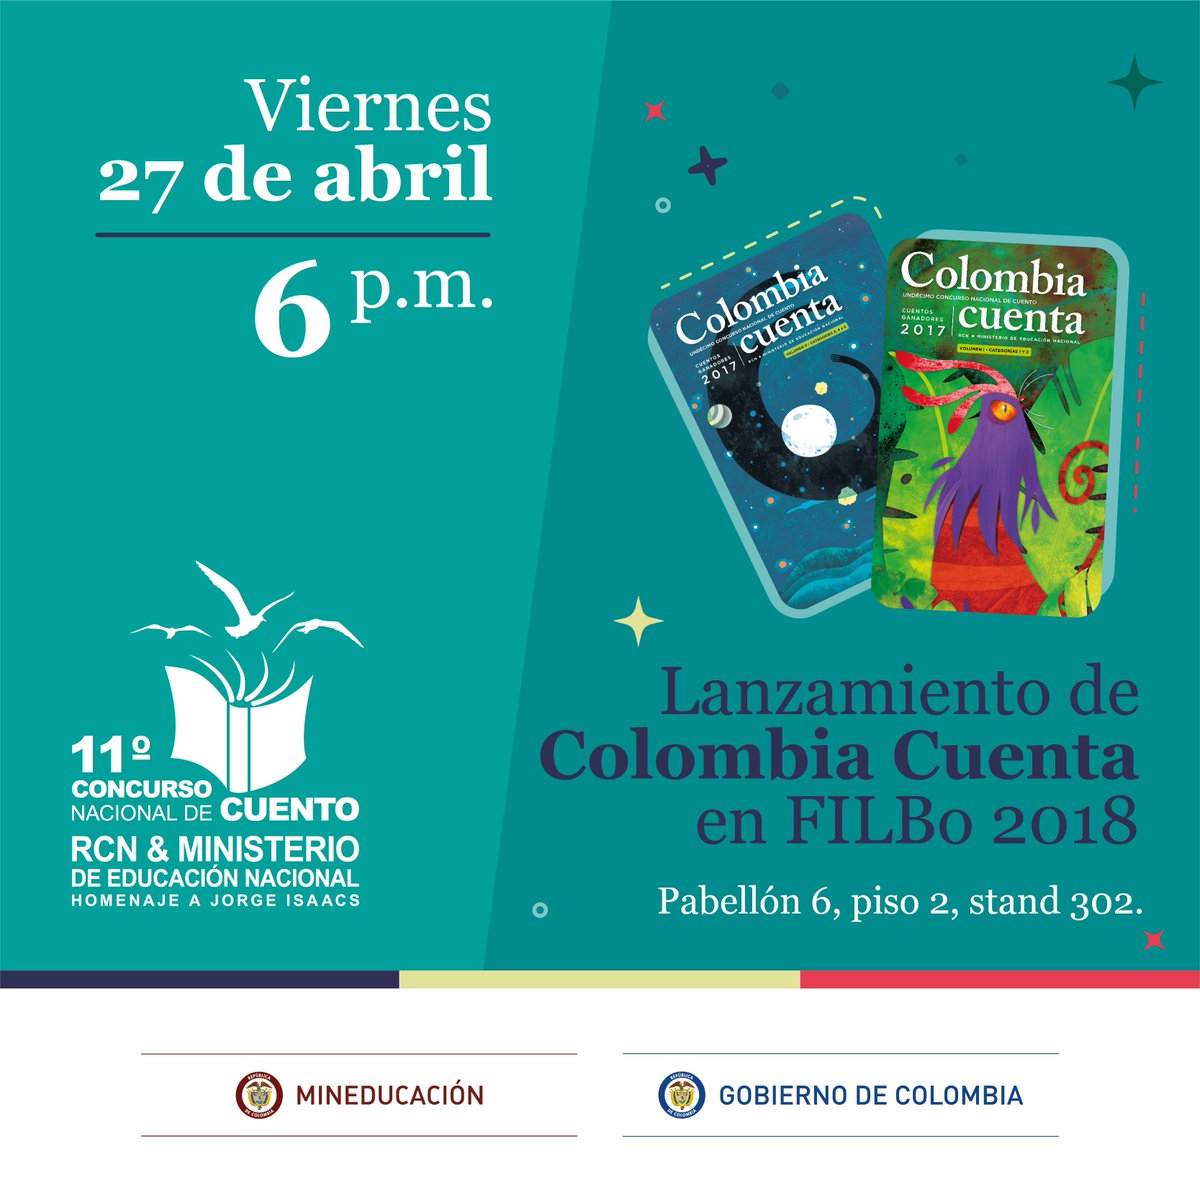 Hoy no te pierdas el lanzamiento del Libro Colombia Cuenta con las mejores creaciones de @concurnalcuento versión XI #FILBo2018 #CuálEsTuCuento @Mineducacion